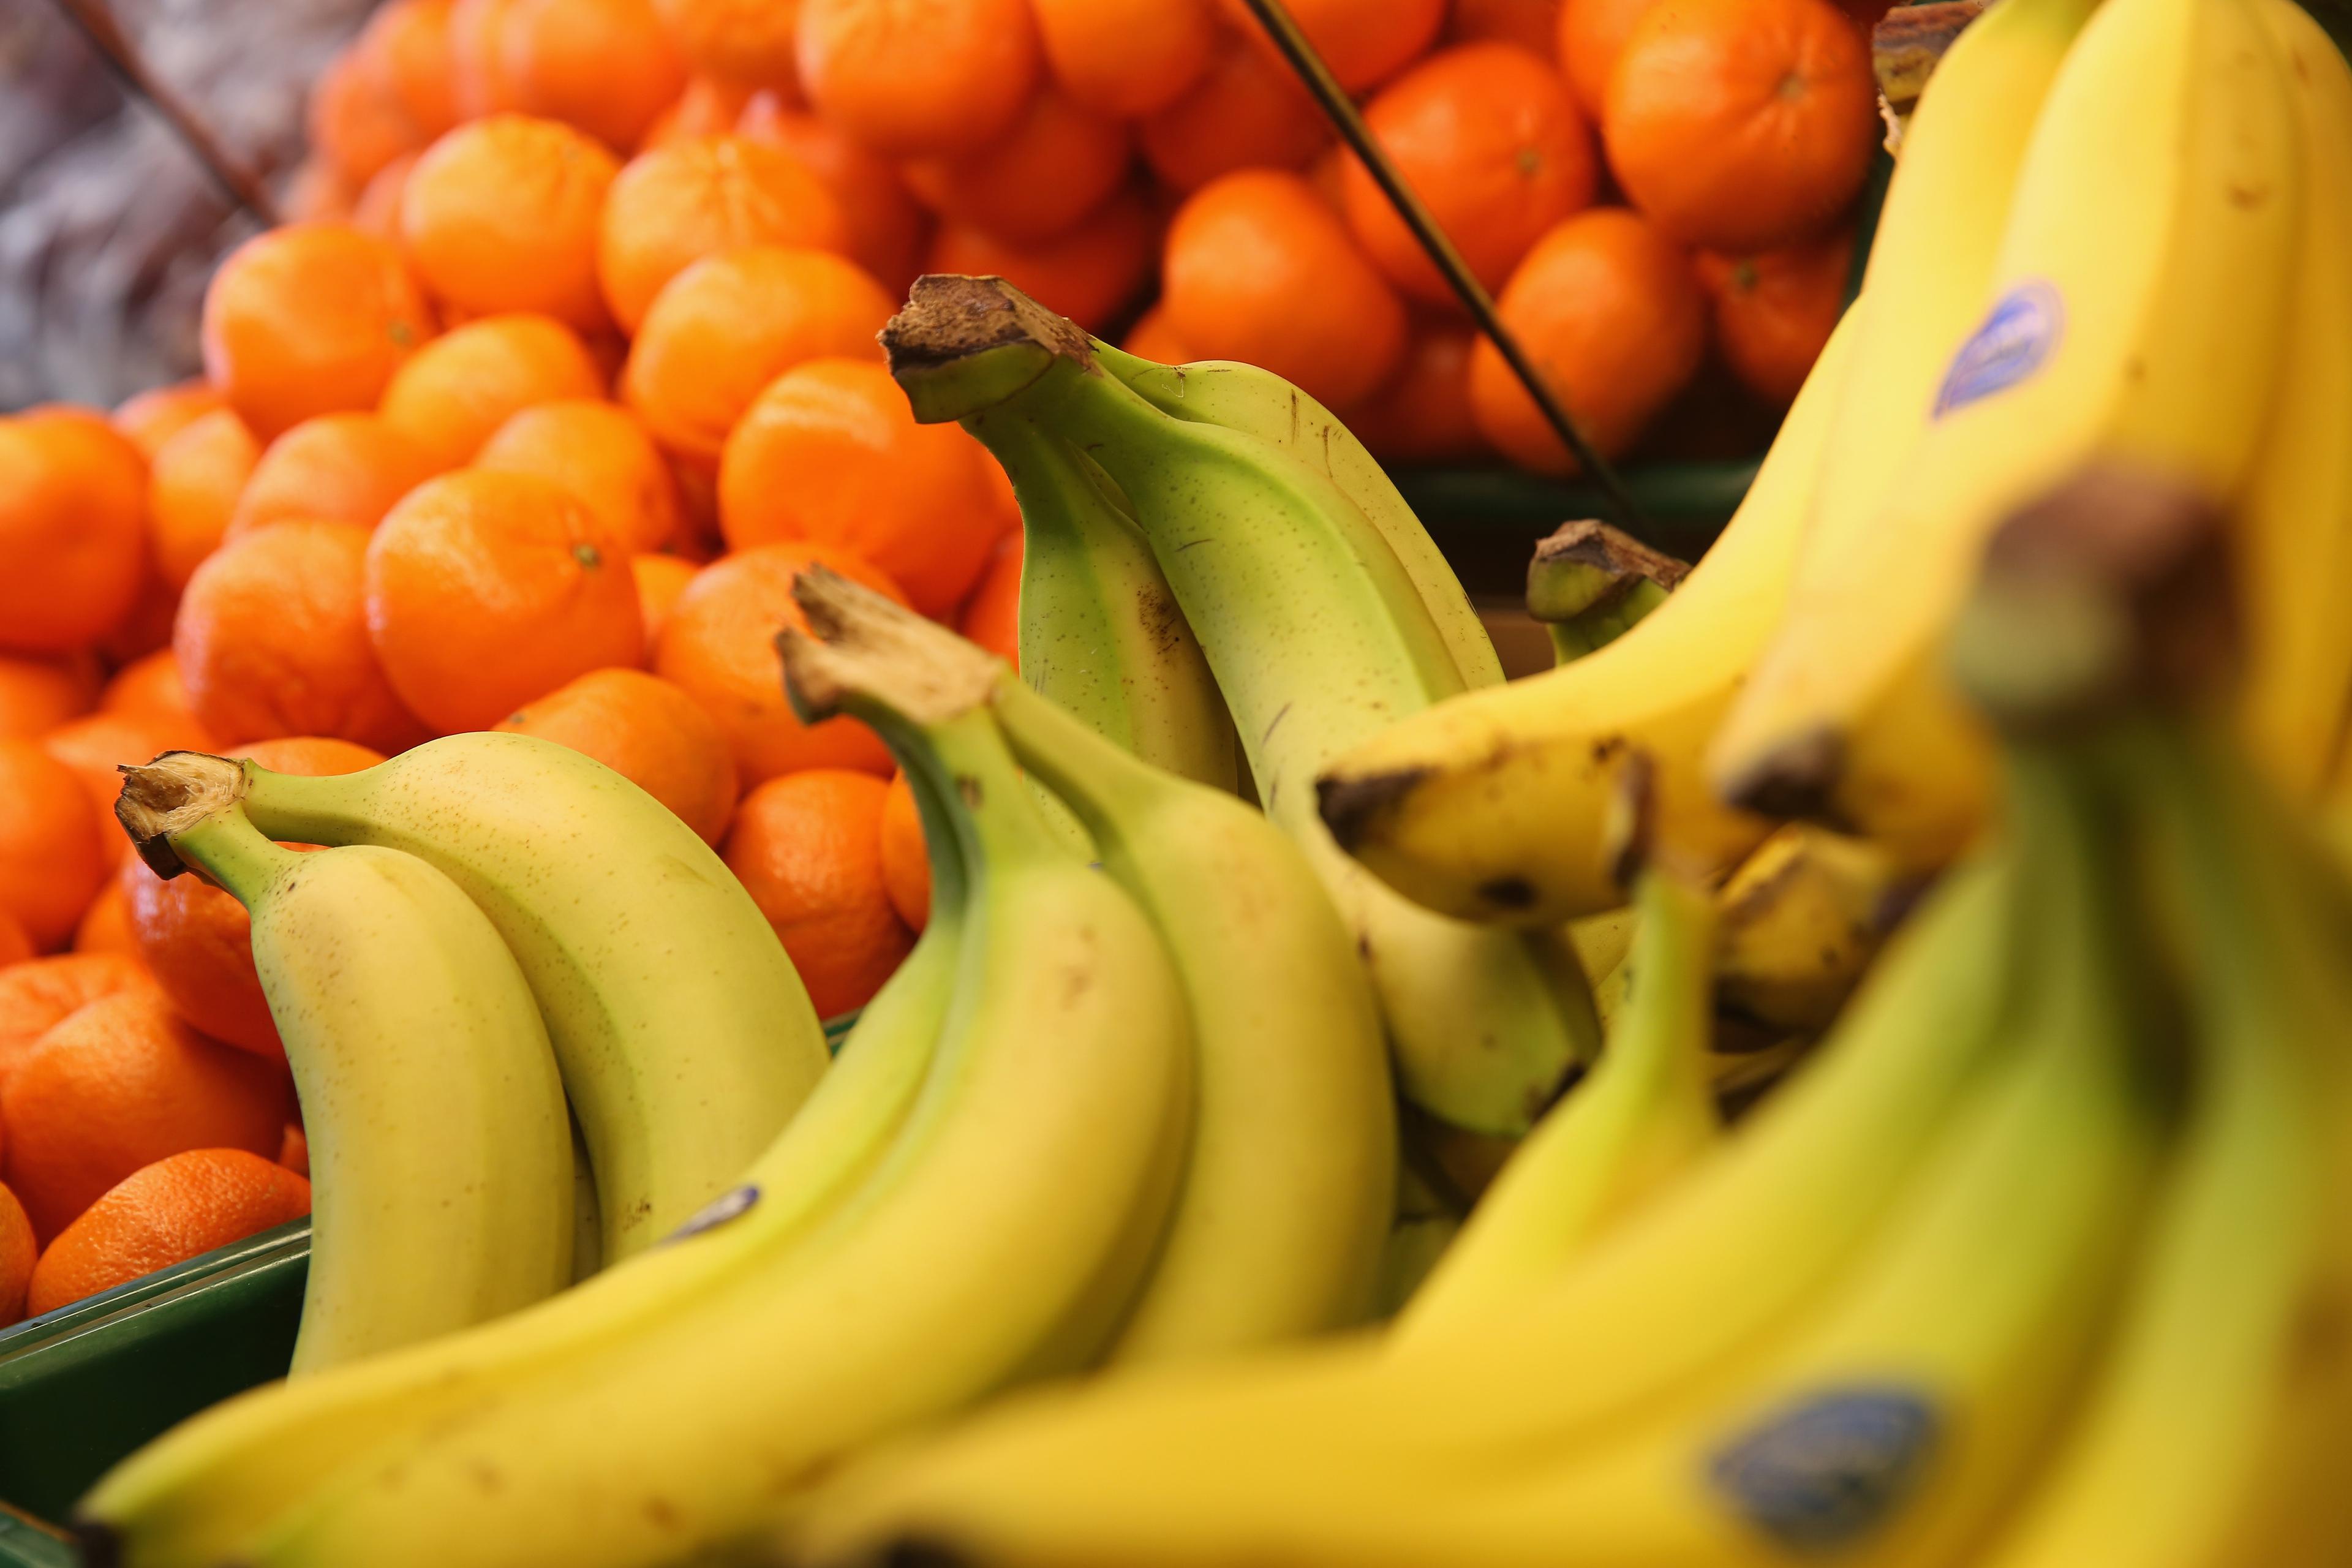 Butikerna slänger mängder med mat, ibland för att kunden inte vill köpa den sista frukten, nu ska forskare på Högskolan i Borås få oss att förstå ur ett miljöperspektiv och ekonomiskt perspektiv så att vi ändrar beteende. (Foto: Christopher Furlong /Getty Image)